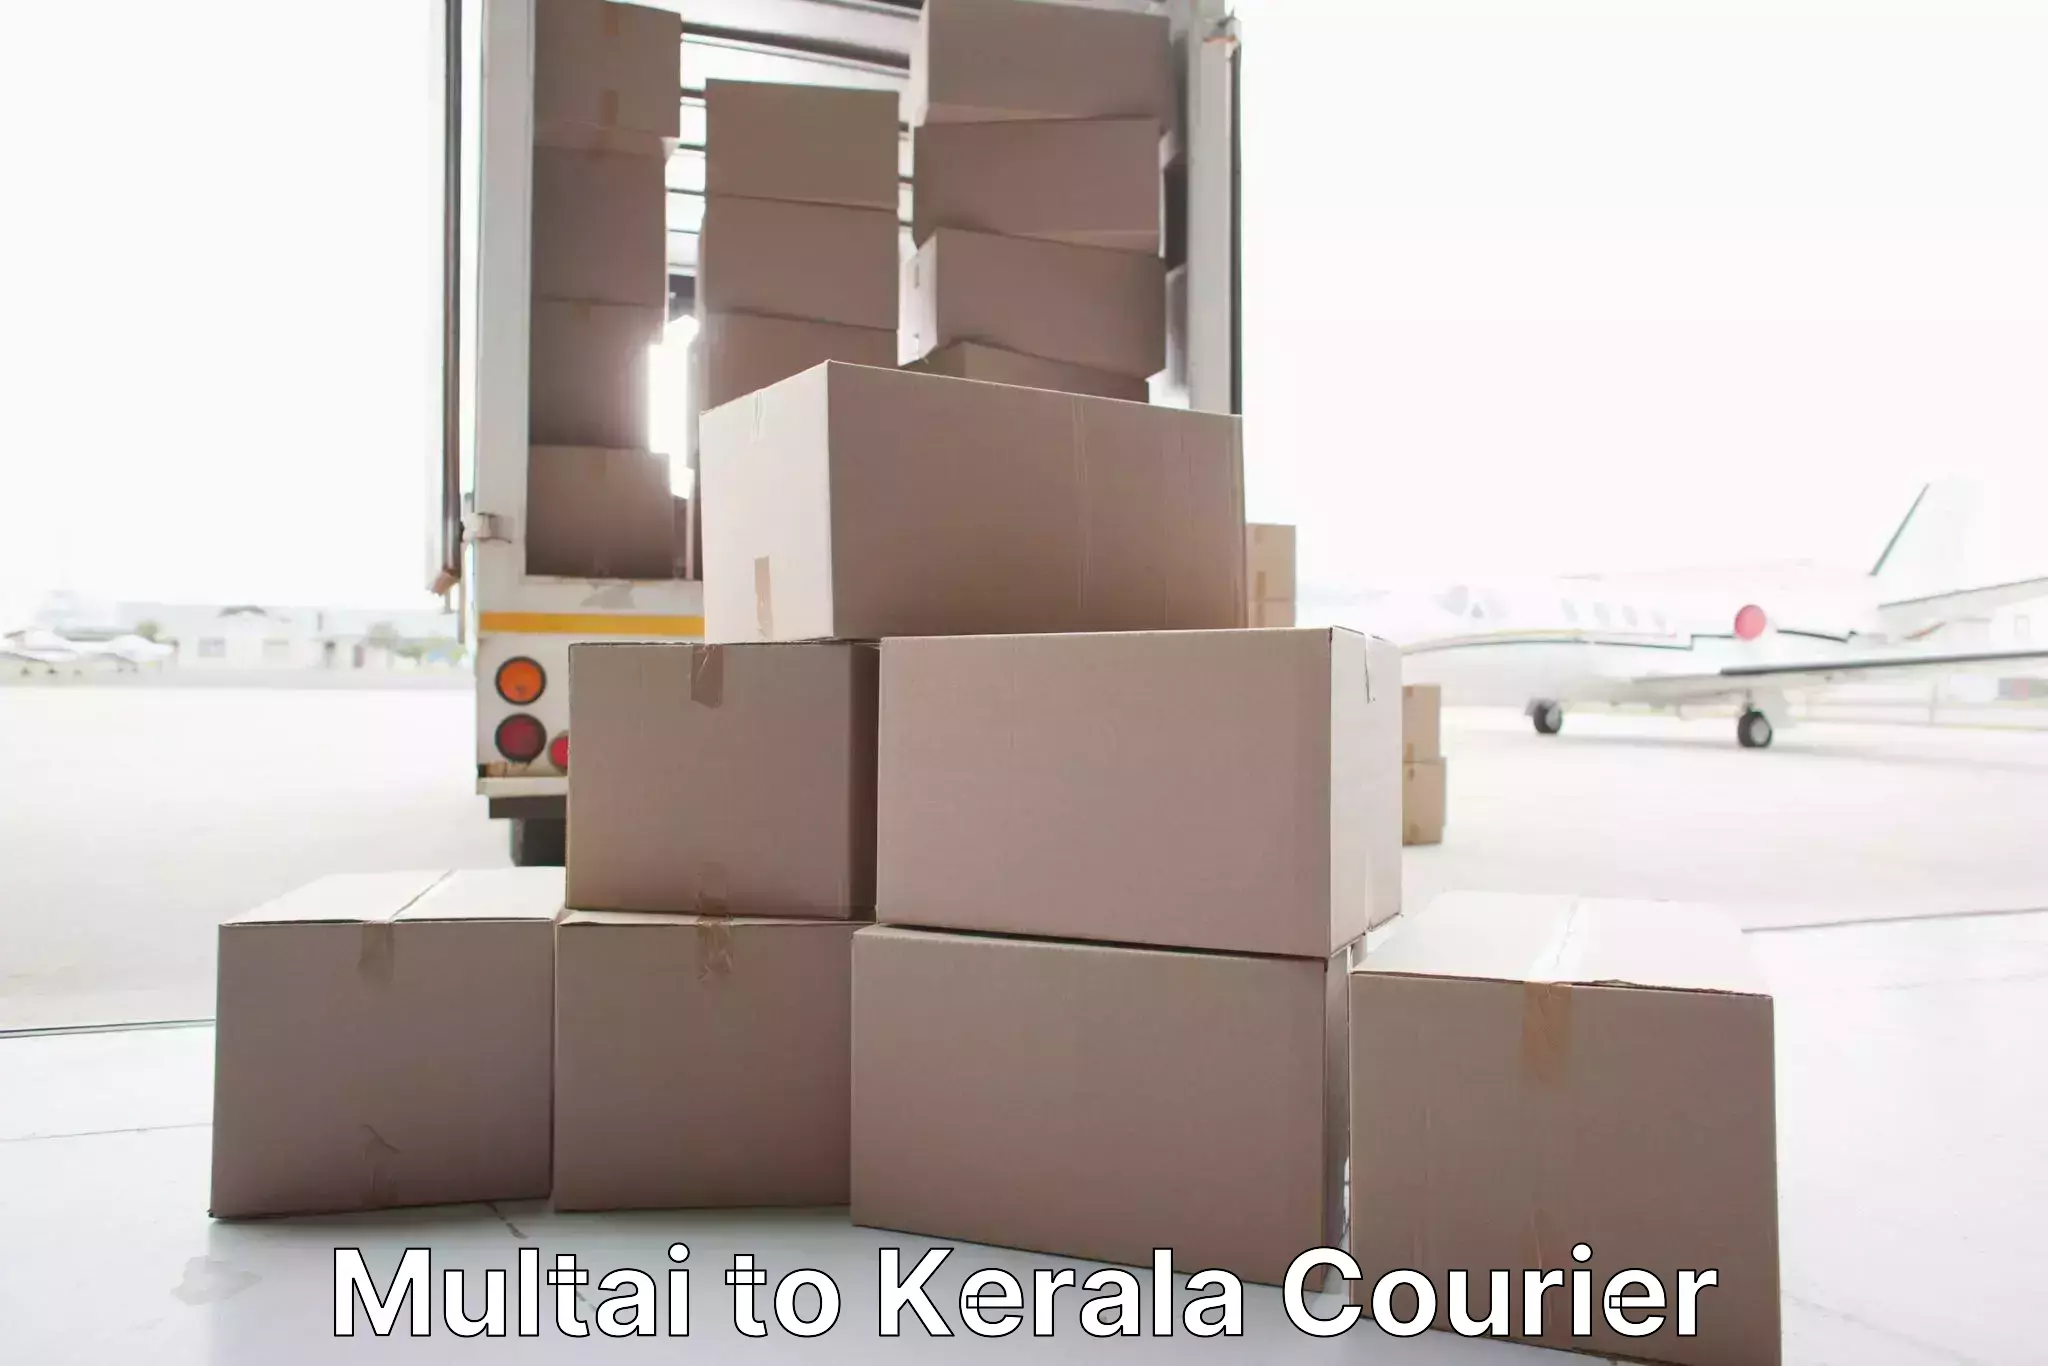 Efficient relocation services Multai to Cochin Port Kochi